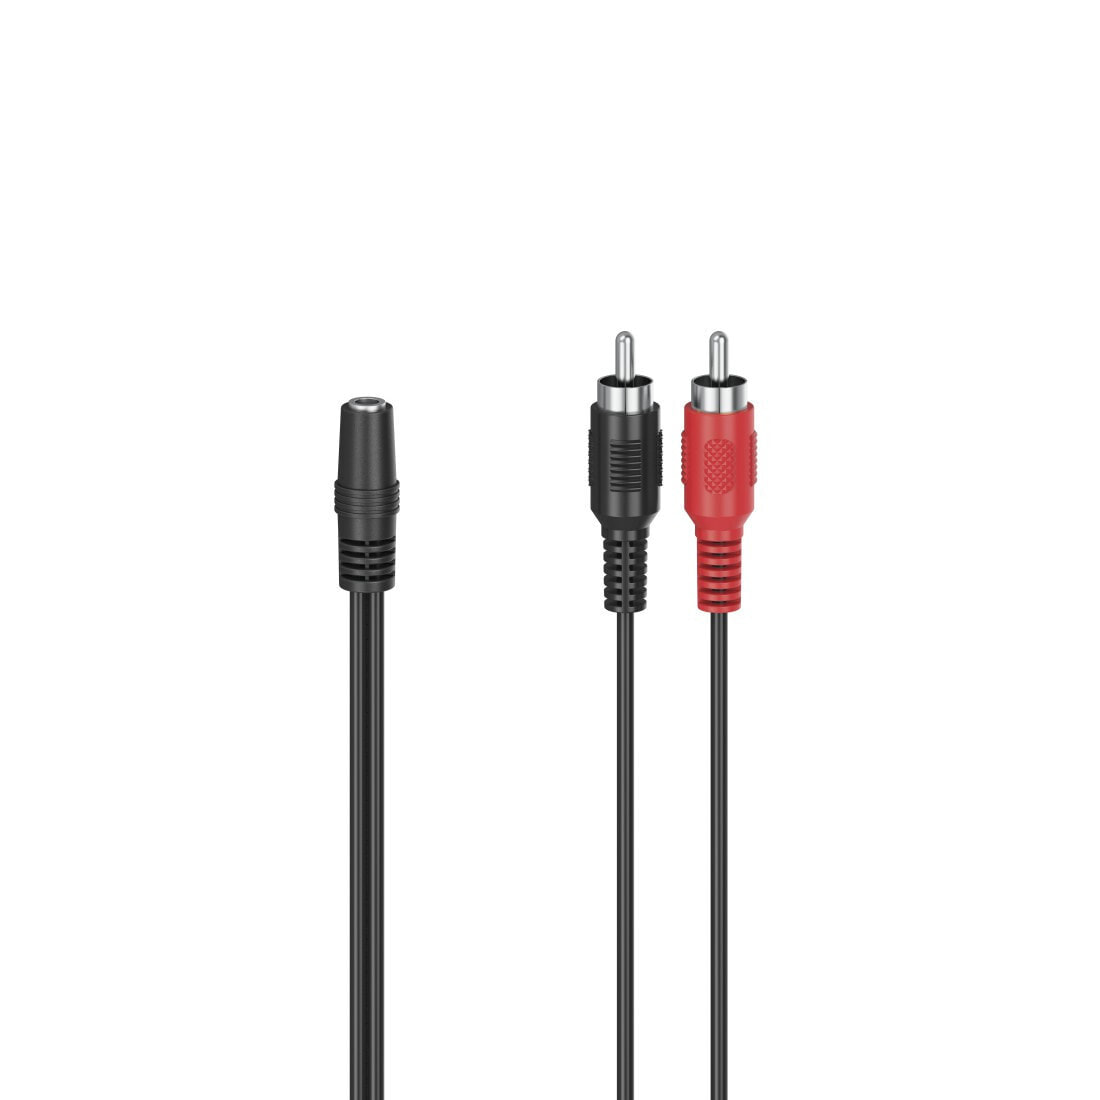 Hama 00205186 аудио кабель 0,1 m 2 x RCA 3,5 мм Черный, Красный